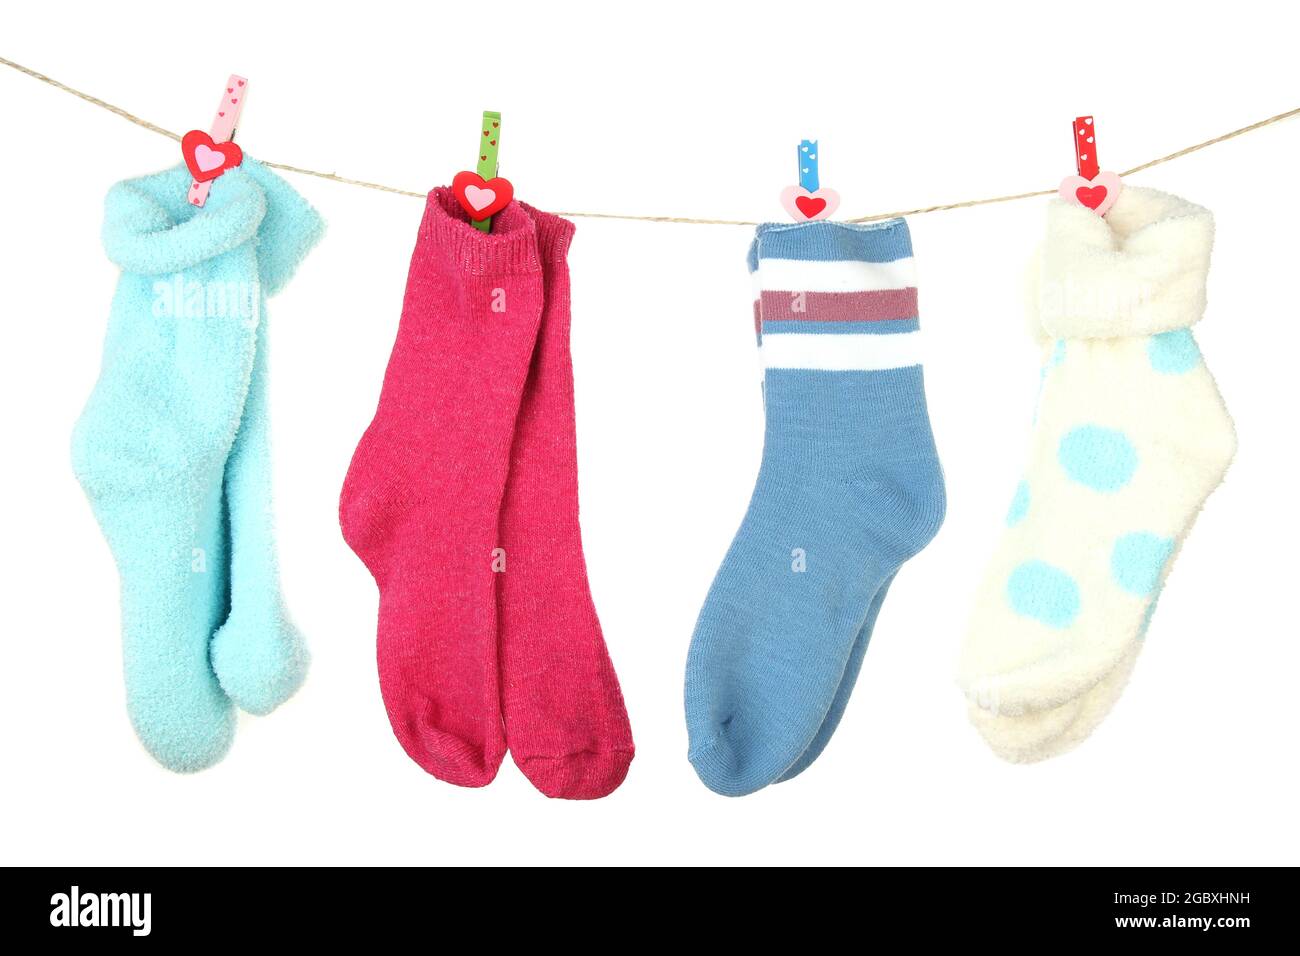 Bunte Socken hängen an Wäscheleine, isoliert auf weiß Stockfotografie -  Alamy